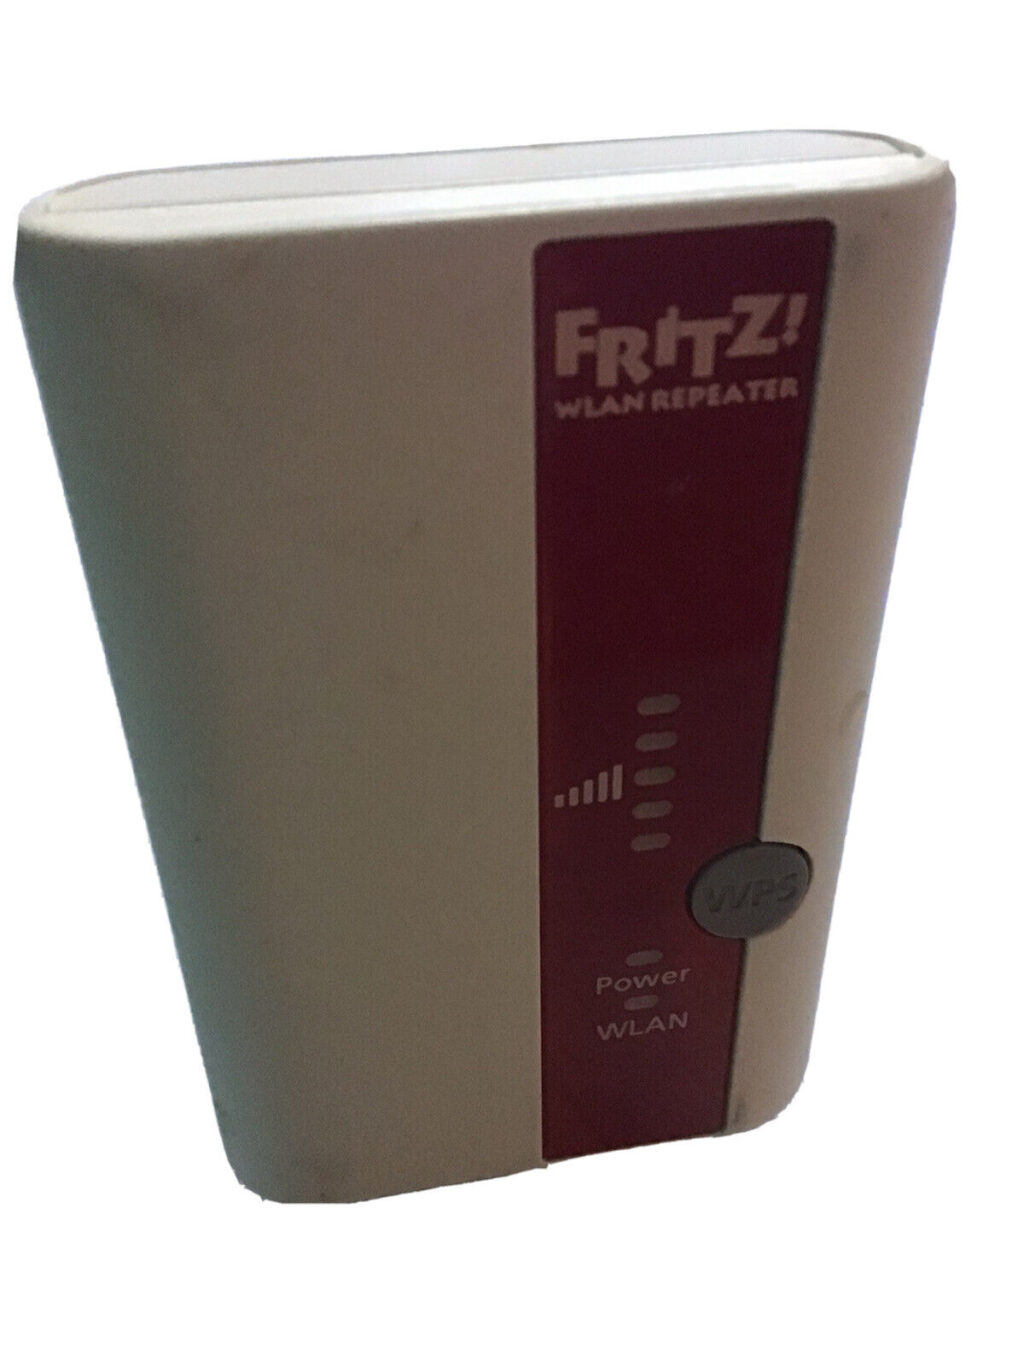 Fritz! WLAN Repeater 310 2,4 GHz 300 Mbit/s voll funkionstüchtig TOP